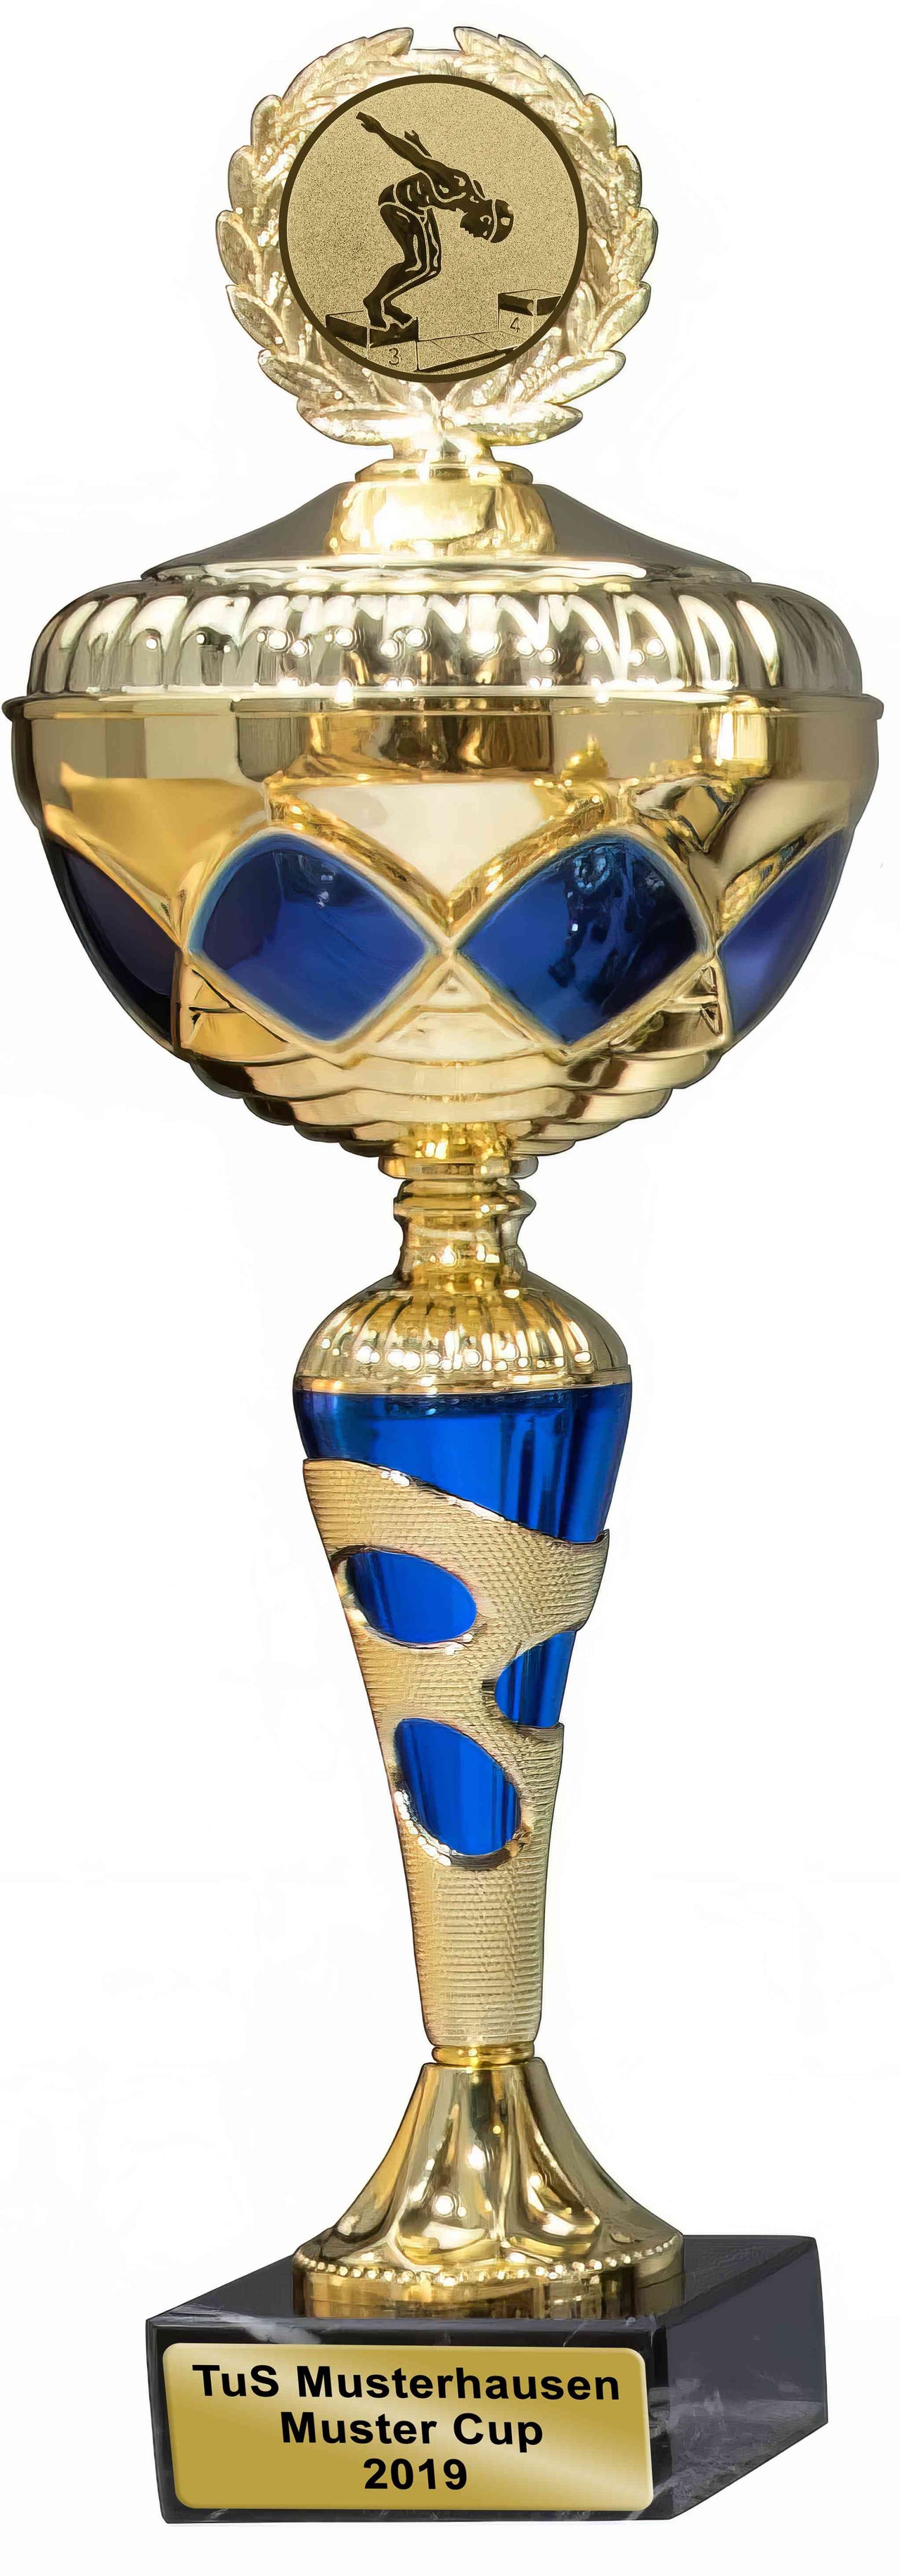 Gold-blauer Pokal Esslingen, 4-er Pokalserie 317 mm – 350 mm PK759890-4-E50 mit einer laufenden Figur oben drauf, als Auszeichnung mit dem „Tus Musterhausen Musterpokal 2019“ ausgezeichnet.